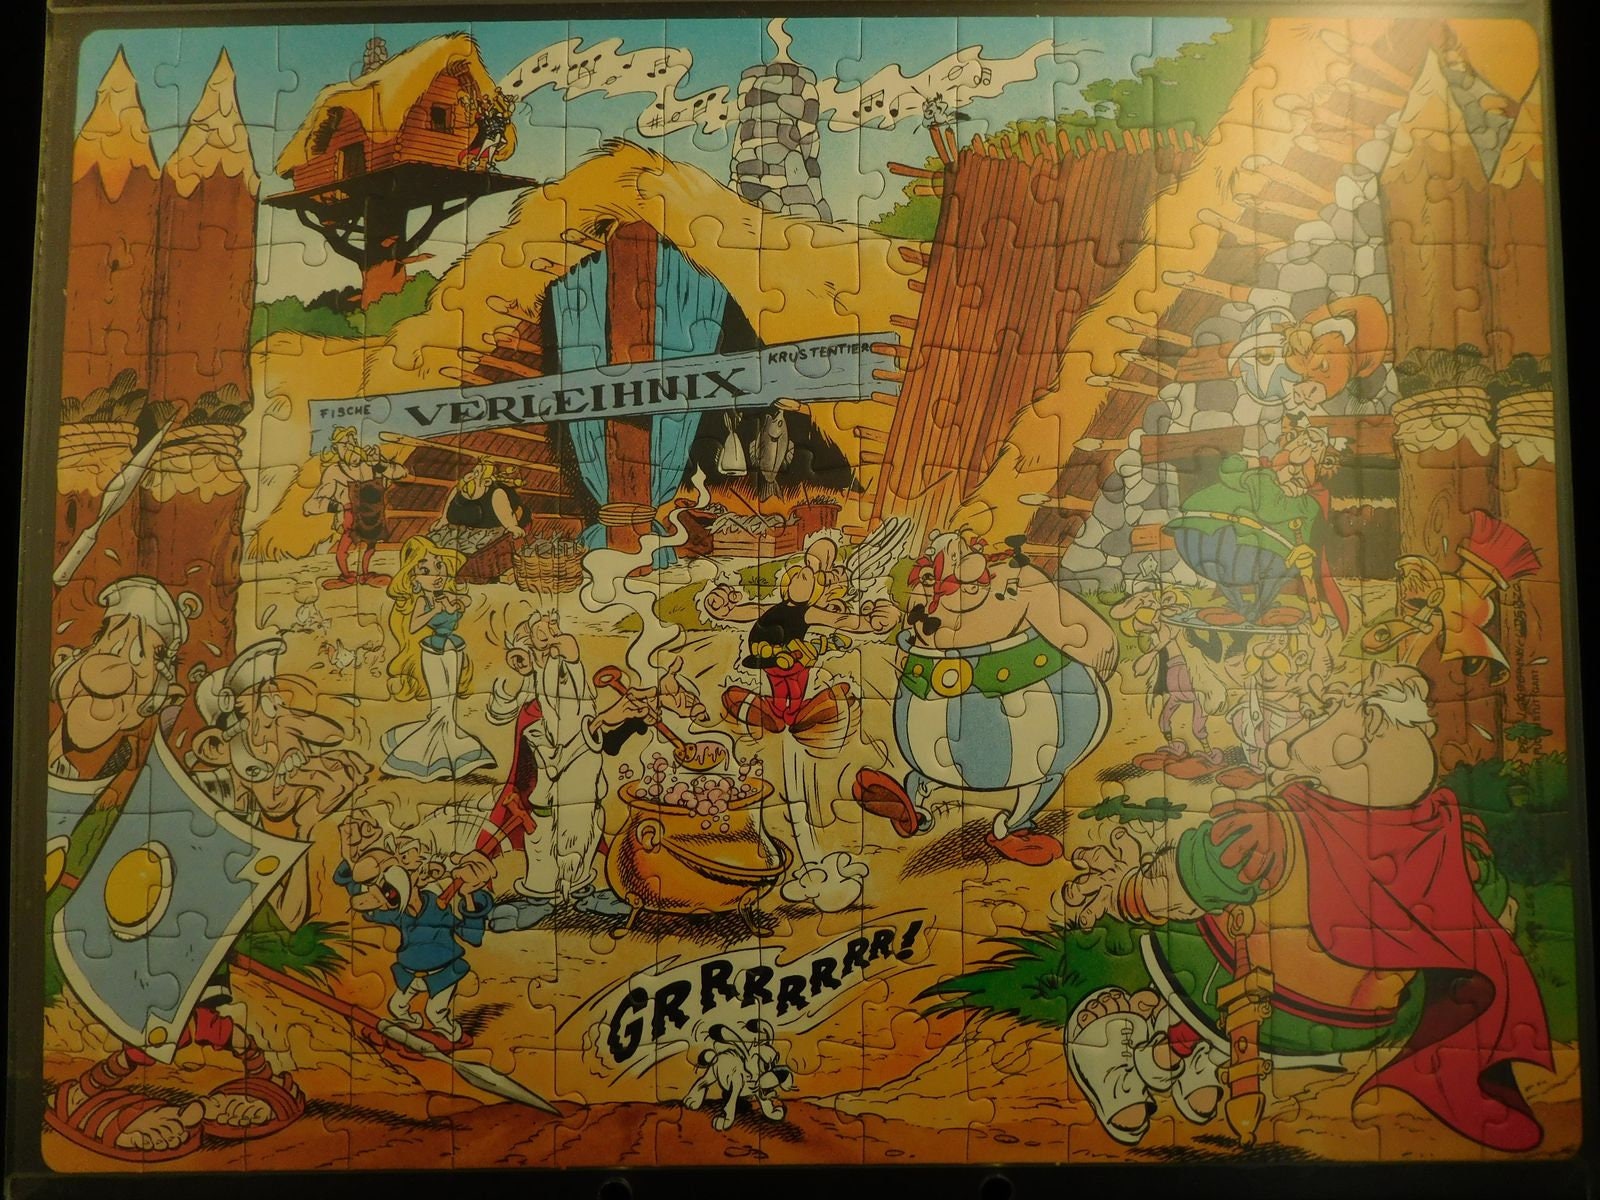 Maxi puzzle Kinder surprise Astérix et Obélix année 2000